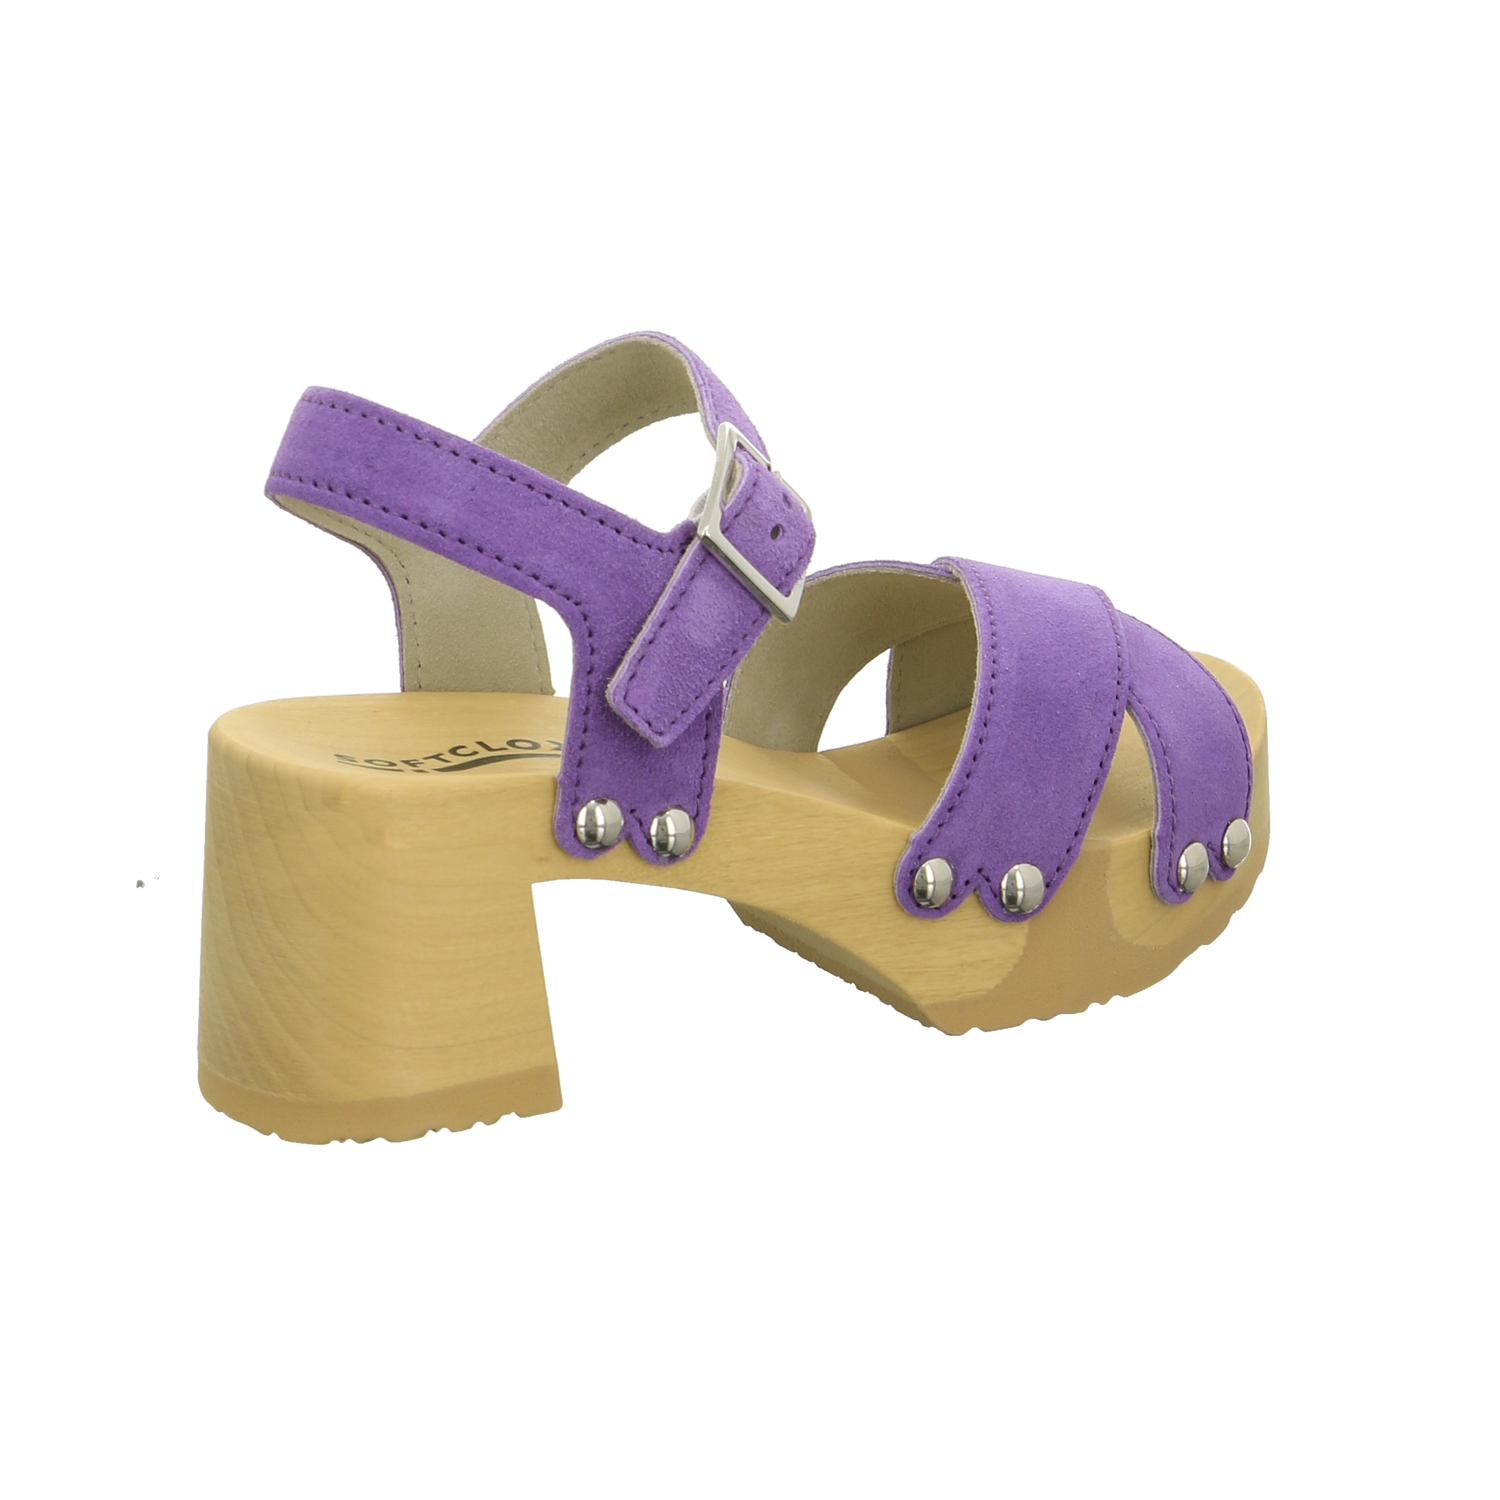 Softclox Sandalette bis 45 mm violett